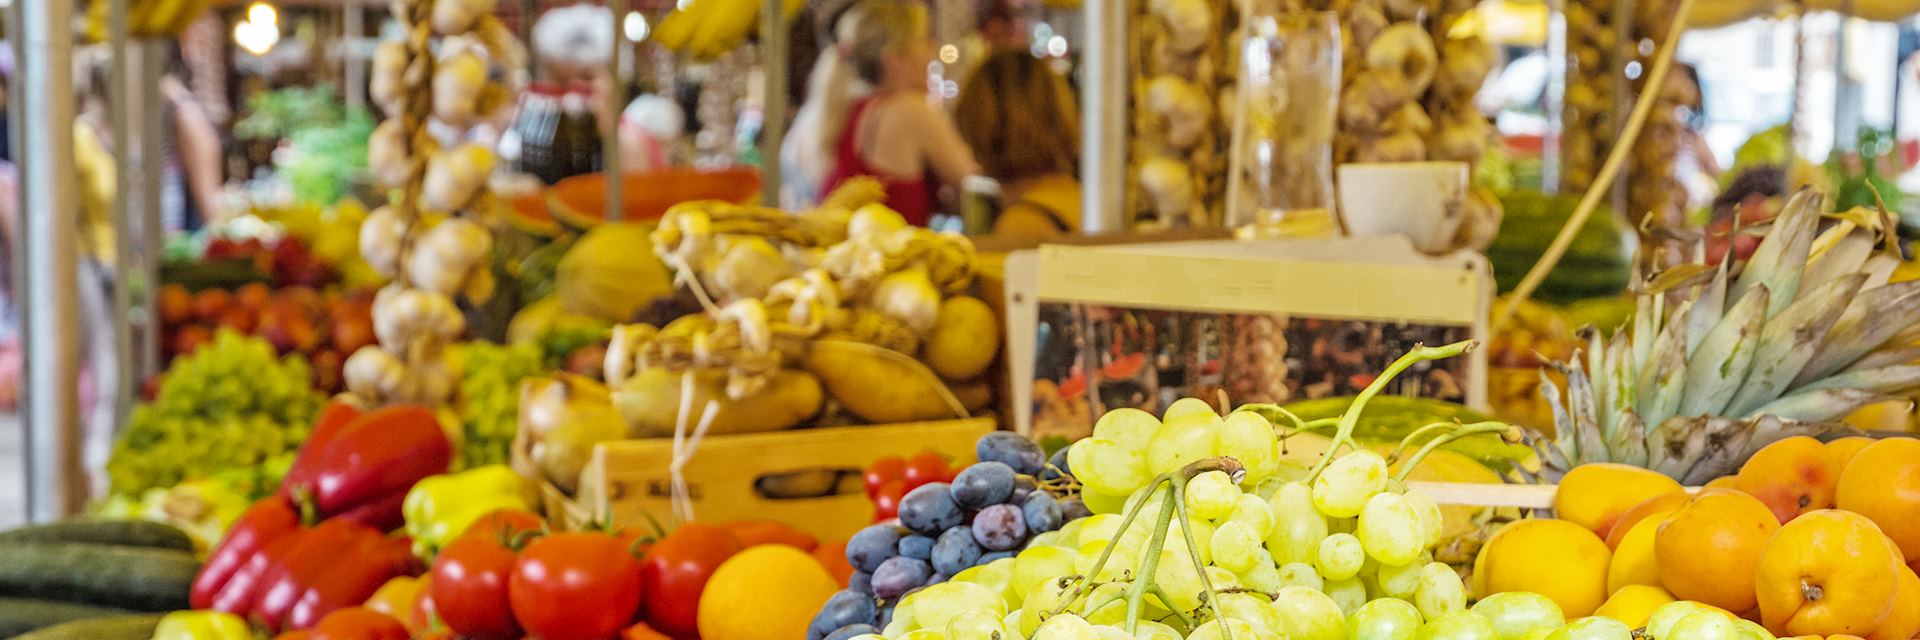 Fresh fruit market stall, Trogir